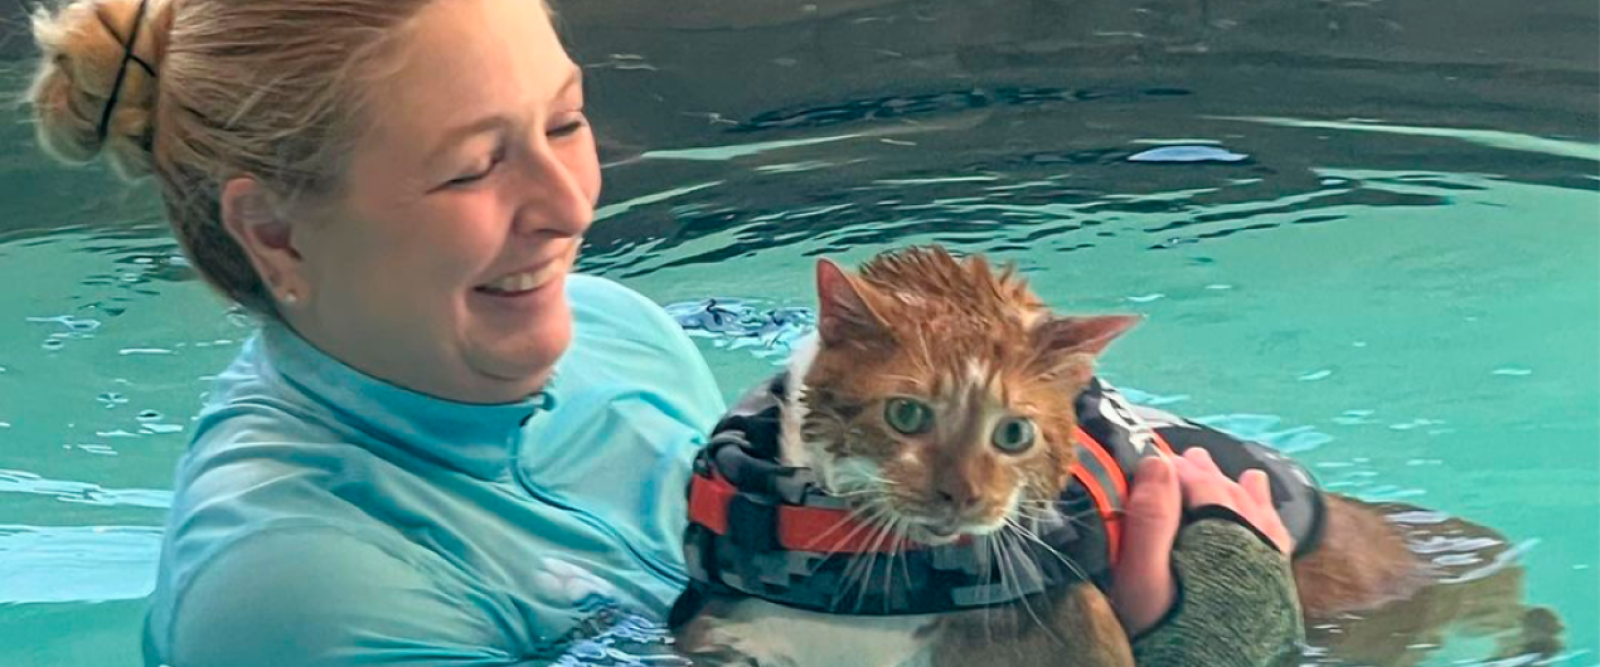 Ty a clases de natación: La historia del gato en terapia para bajar de peso